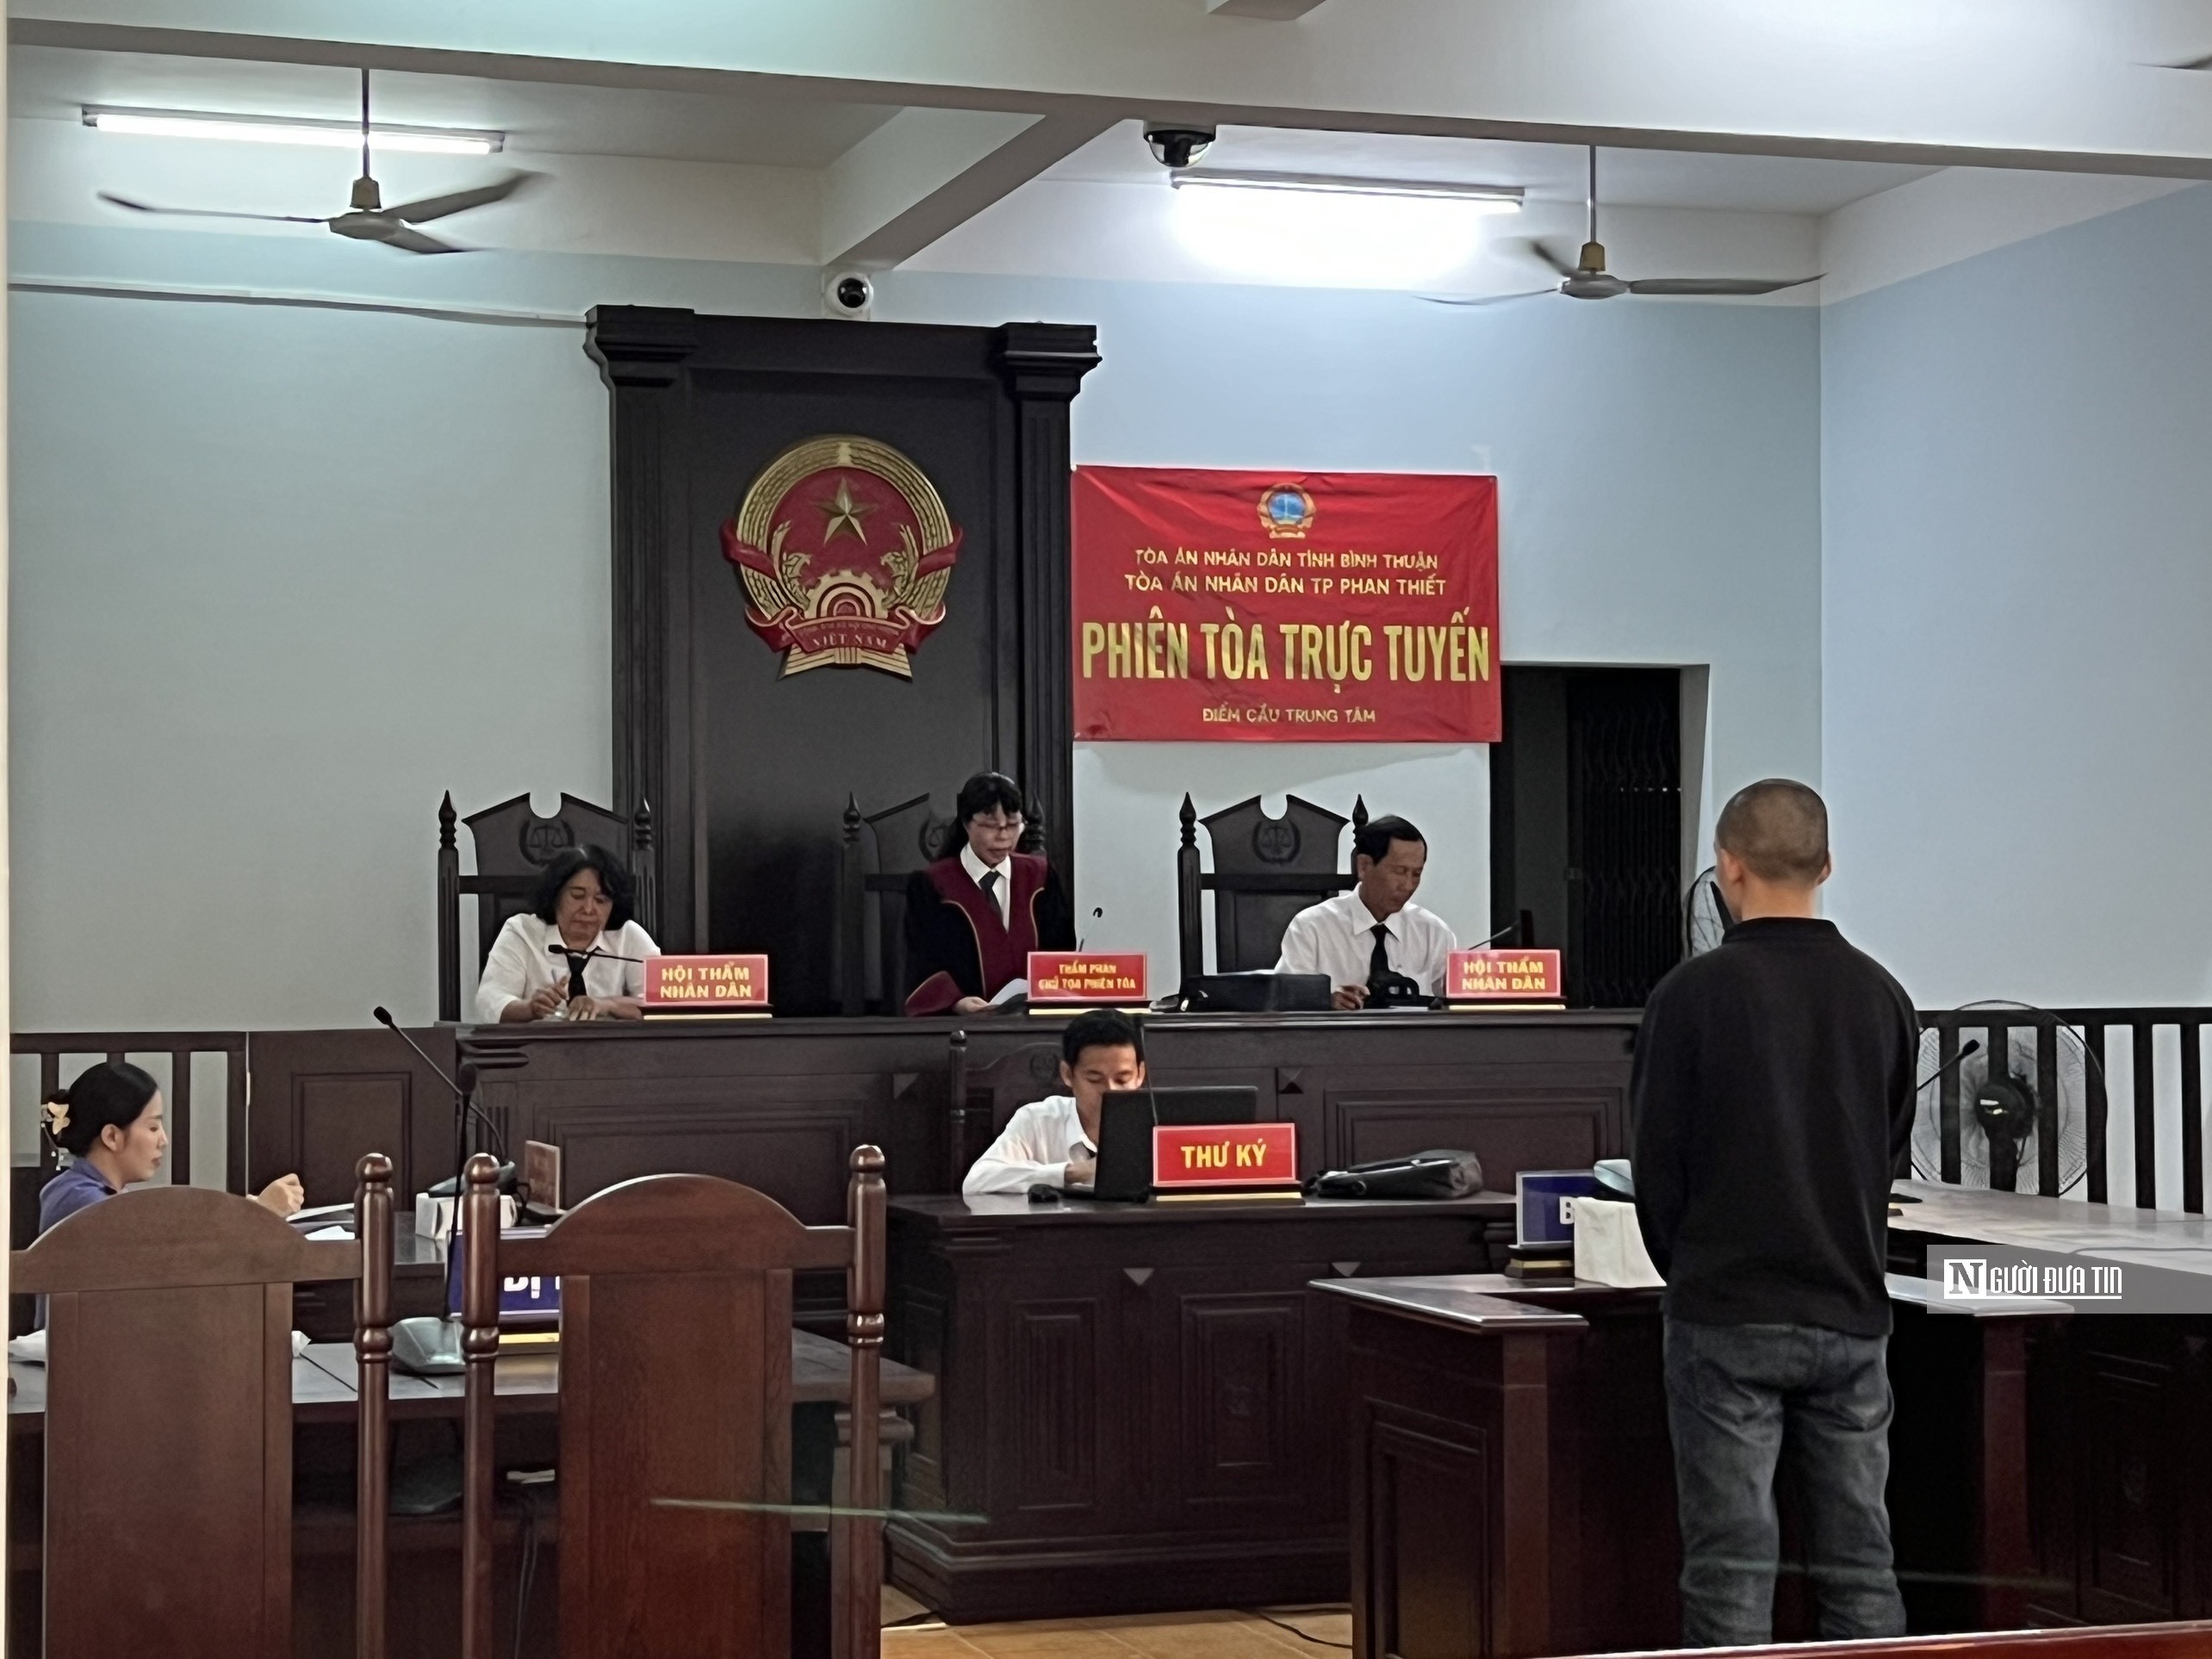 Hồ sơ điều tra - Bình Thuận: Kẻ chuyên cướp giật điện thoại người đi đường lãnh án tù (Hình 2).